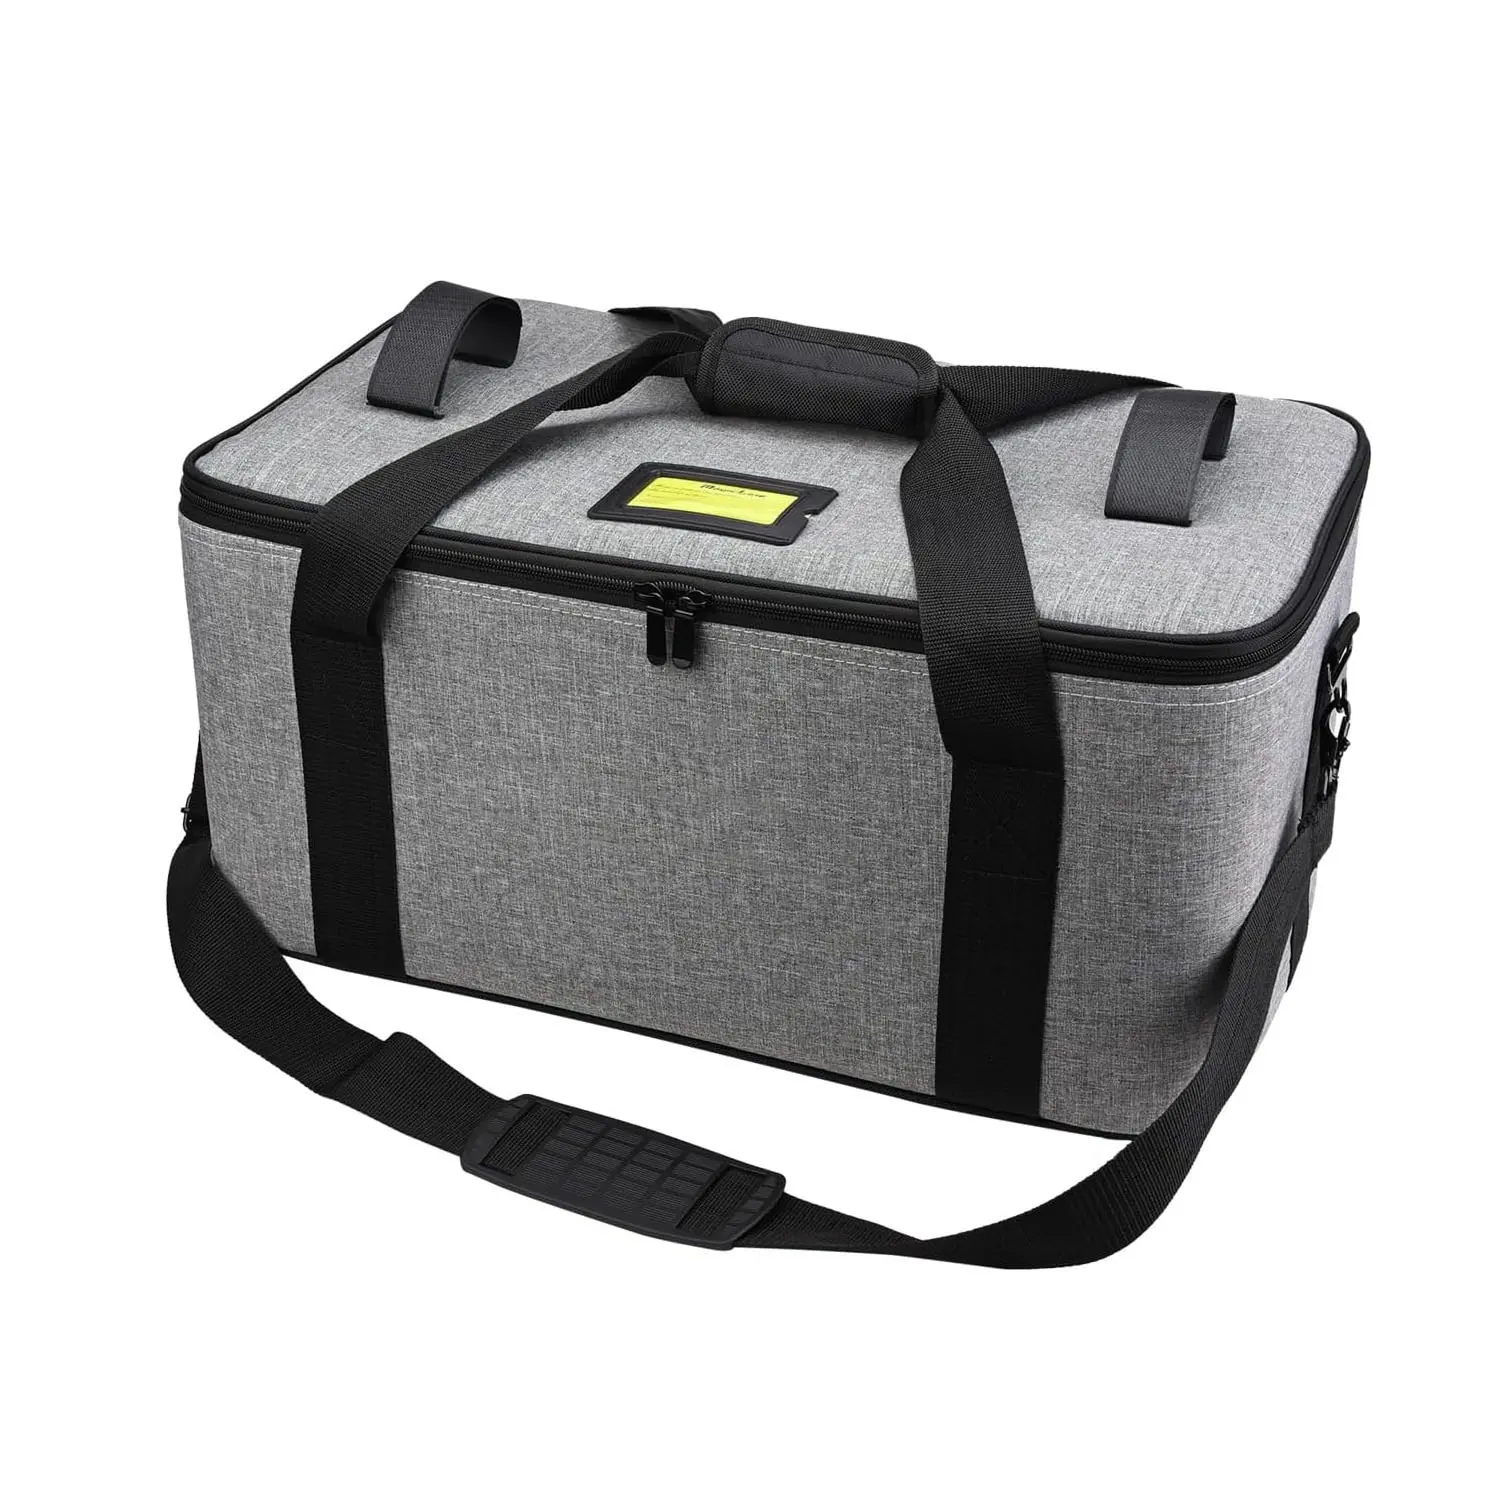 Fotoğraf stüdyosu kamera işık darbeye köpük bölmeler ile taşıma çantası sert sabitleyici LED ışık Drone için taşıma çantası